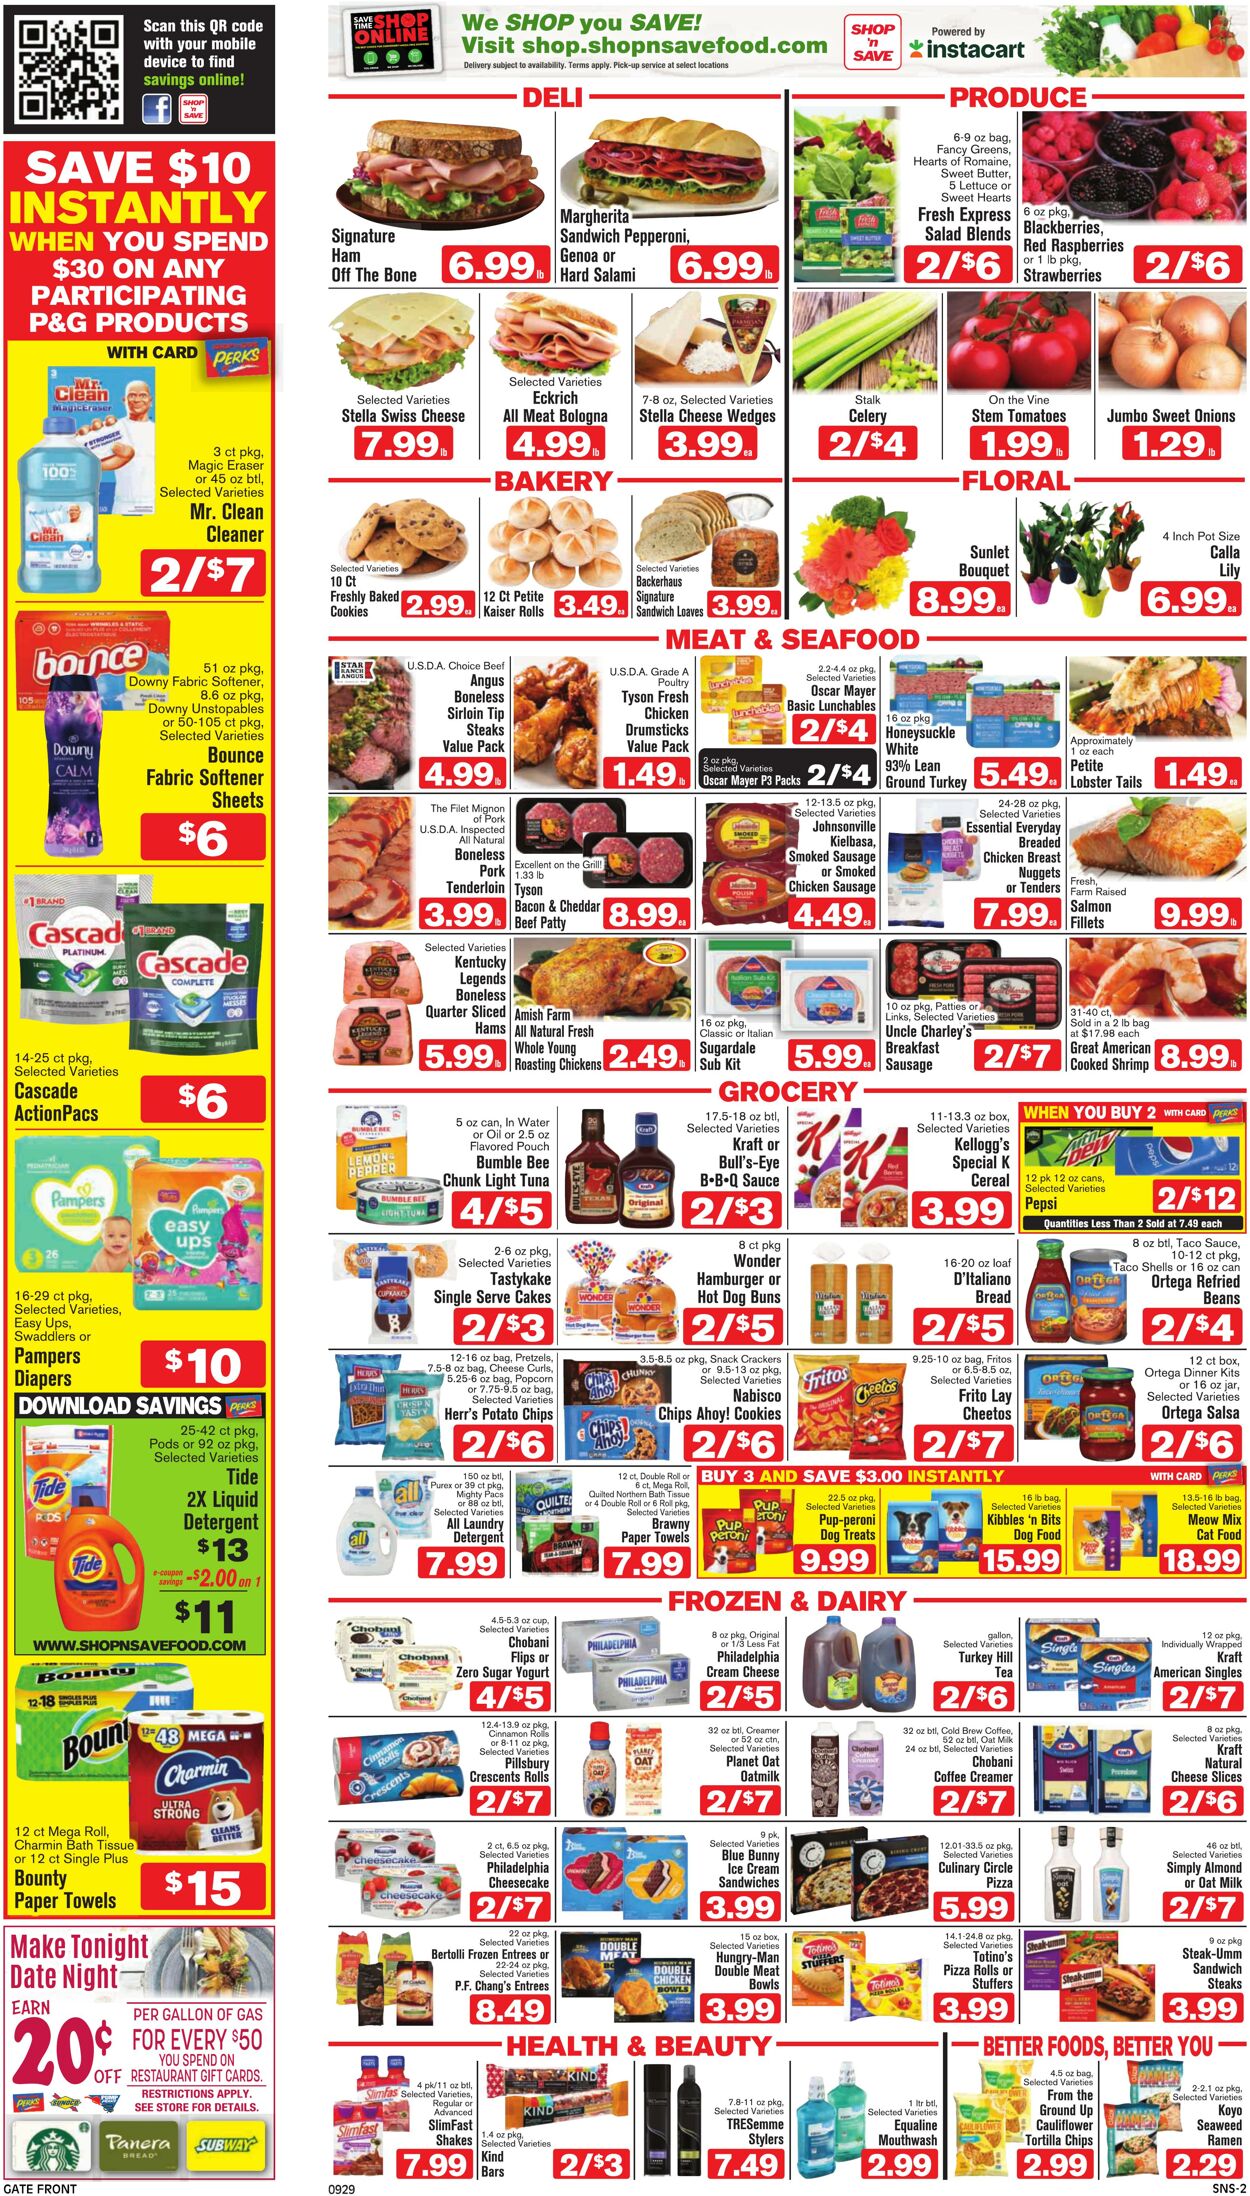 Weekly ad Shop'n Save 09/29/2022 - 10/05/2022